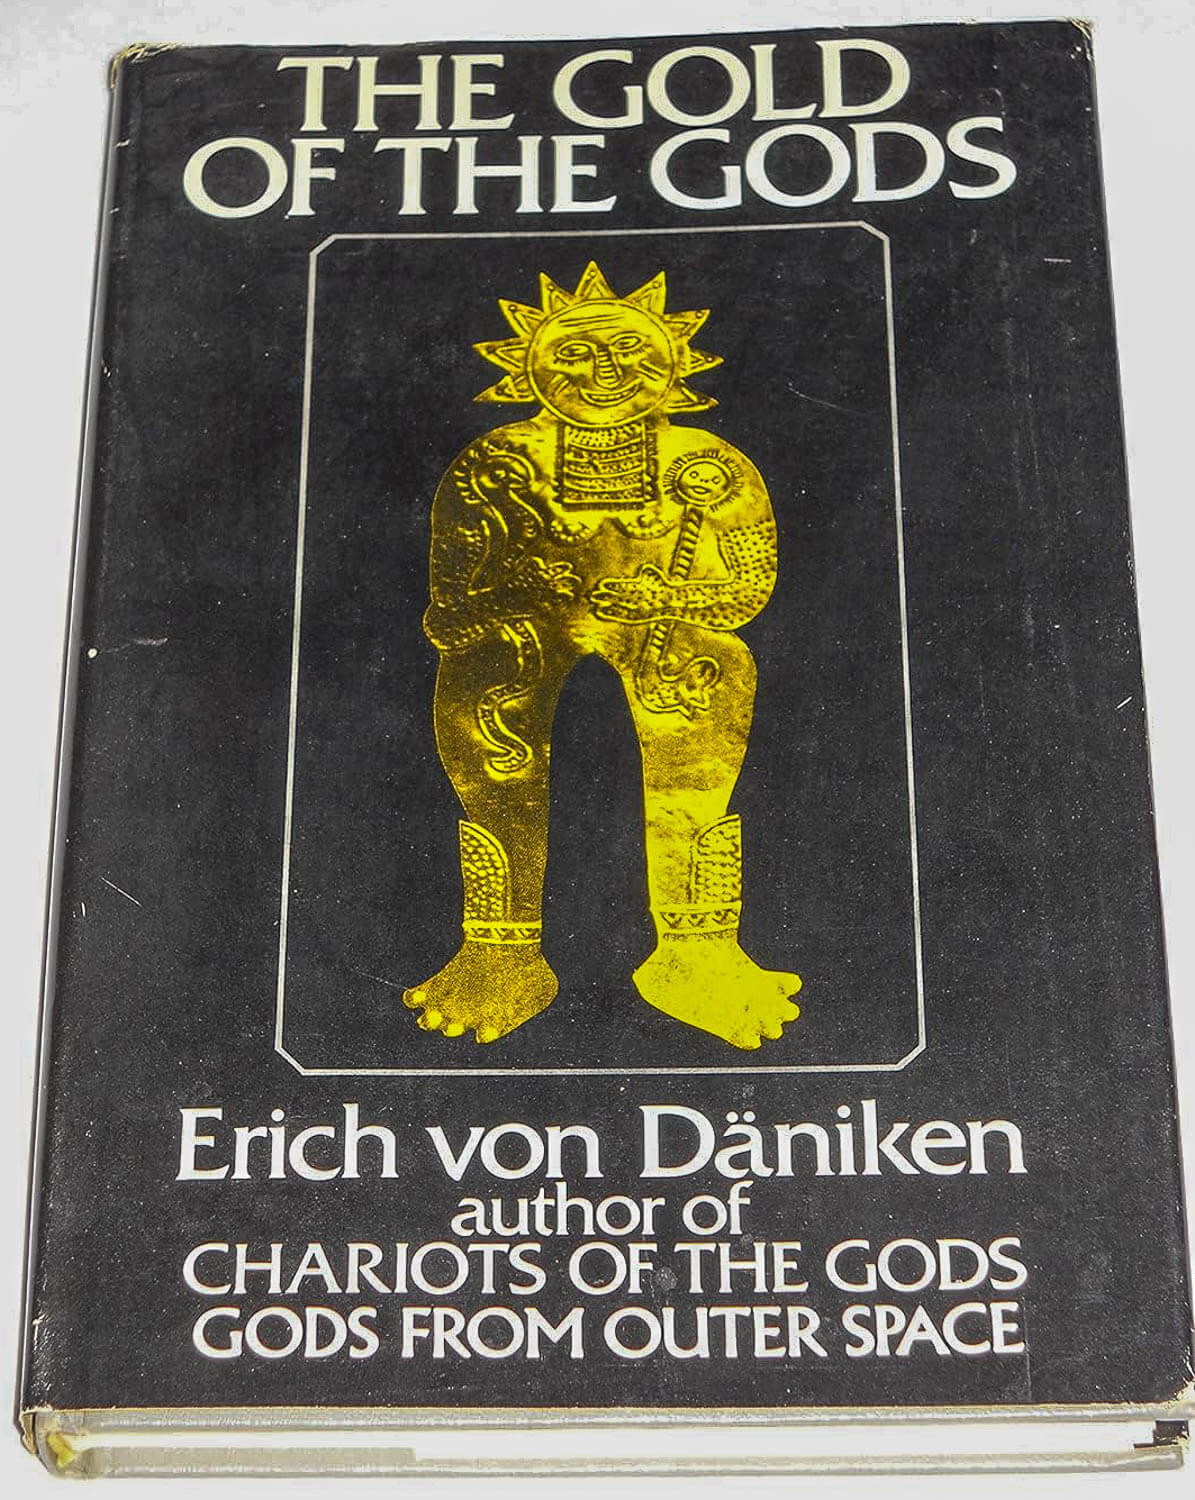 The Gold of The Gods book from Erich von Däniken